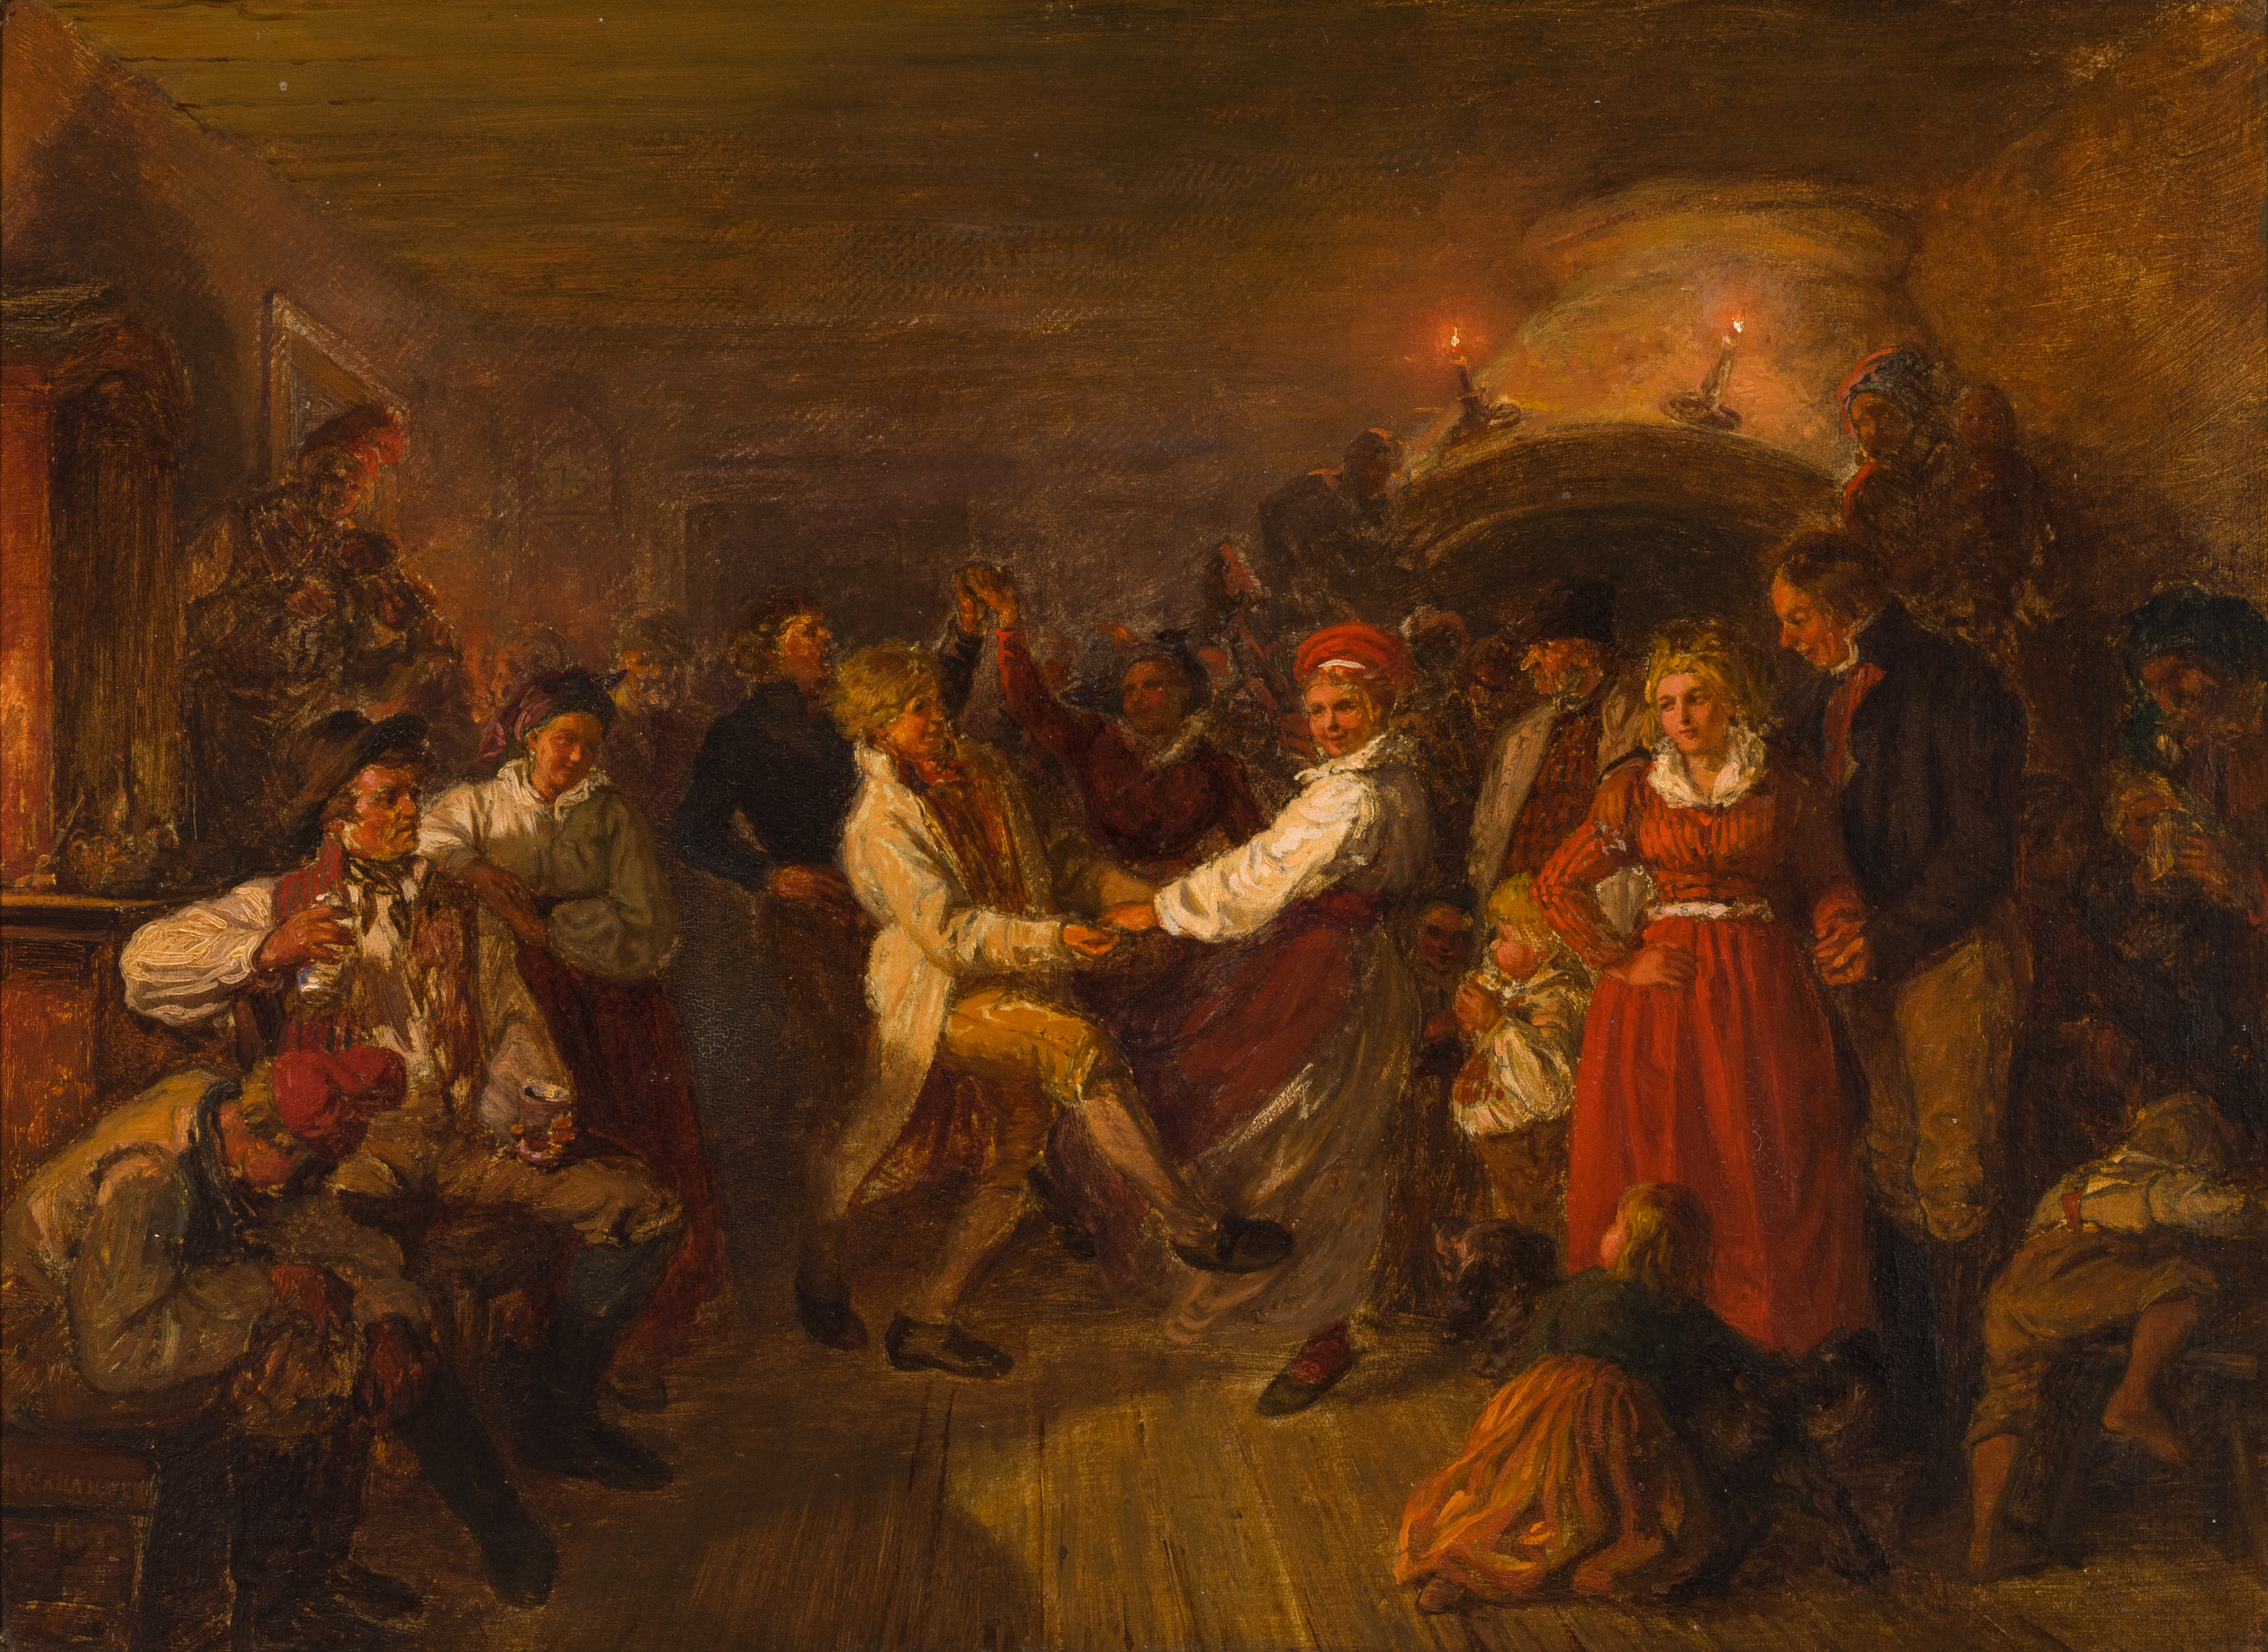 Målning med dansande människor från 1800-talet